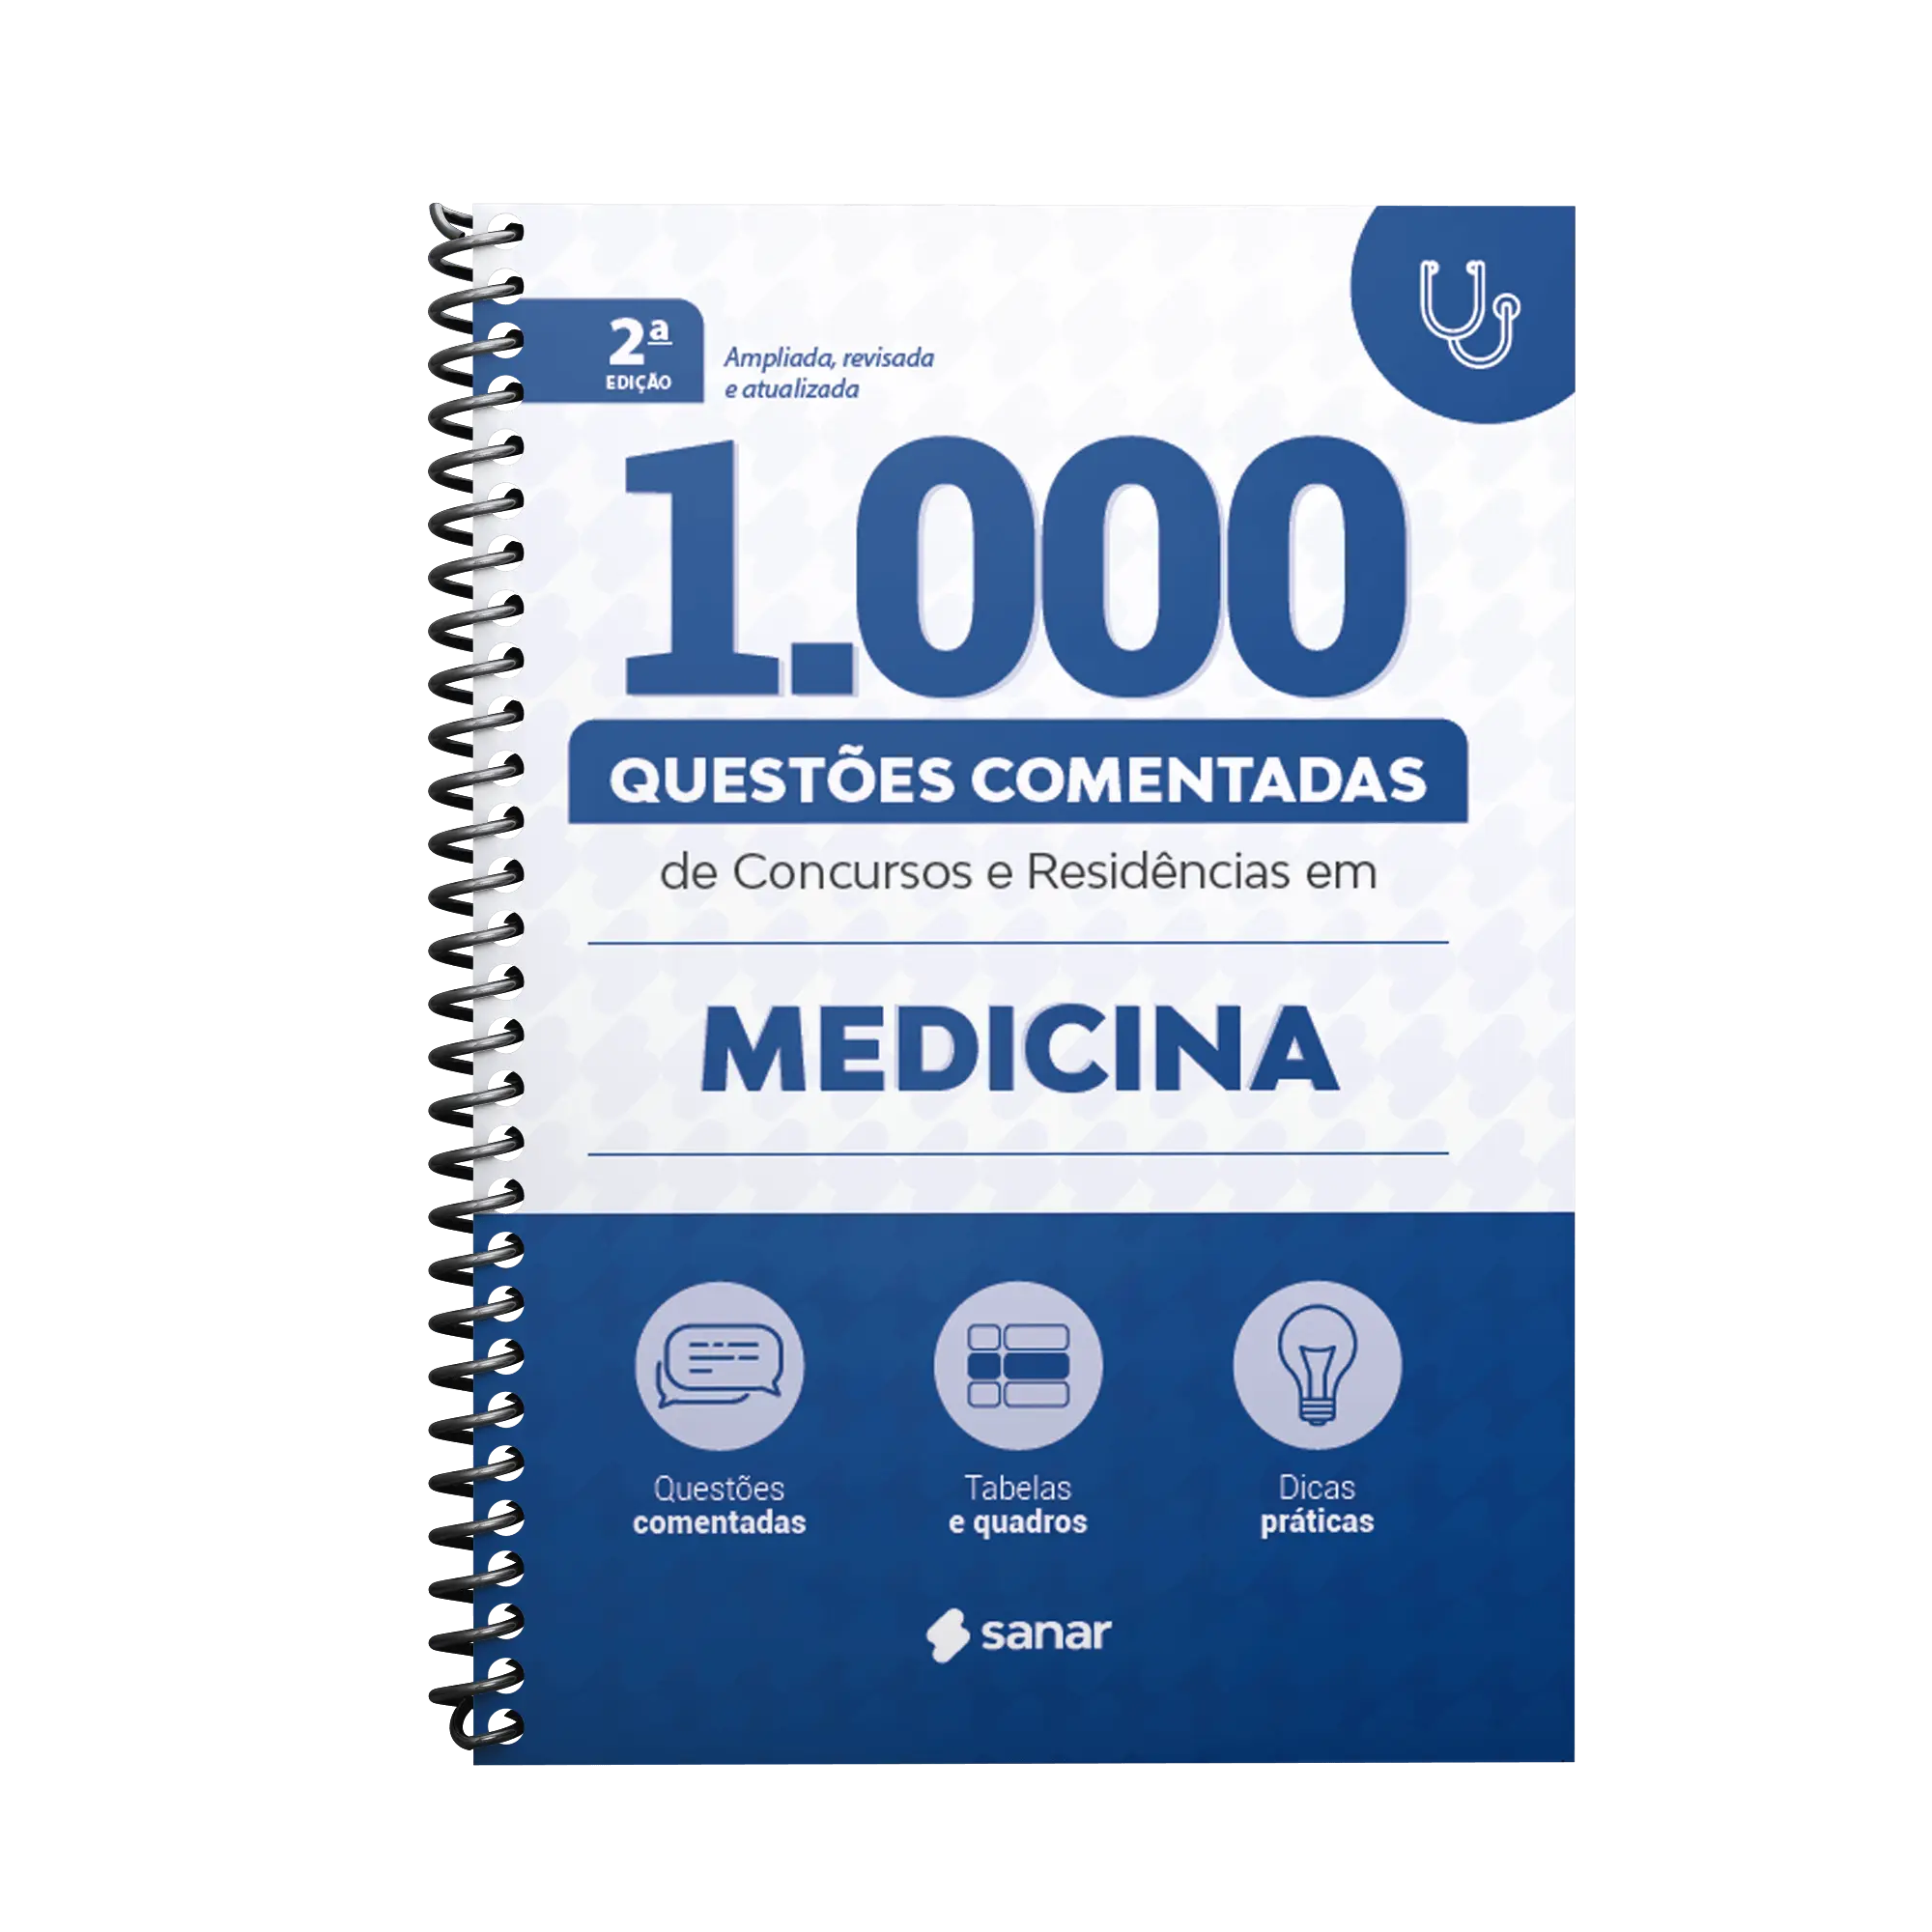 Imagem do livro 1,000 Questões Comentadas de Concursos e Residências em Medicina 2ª Edição